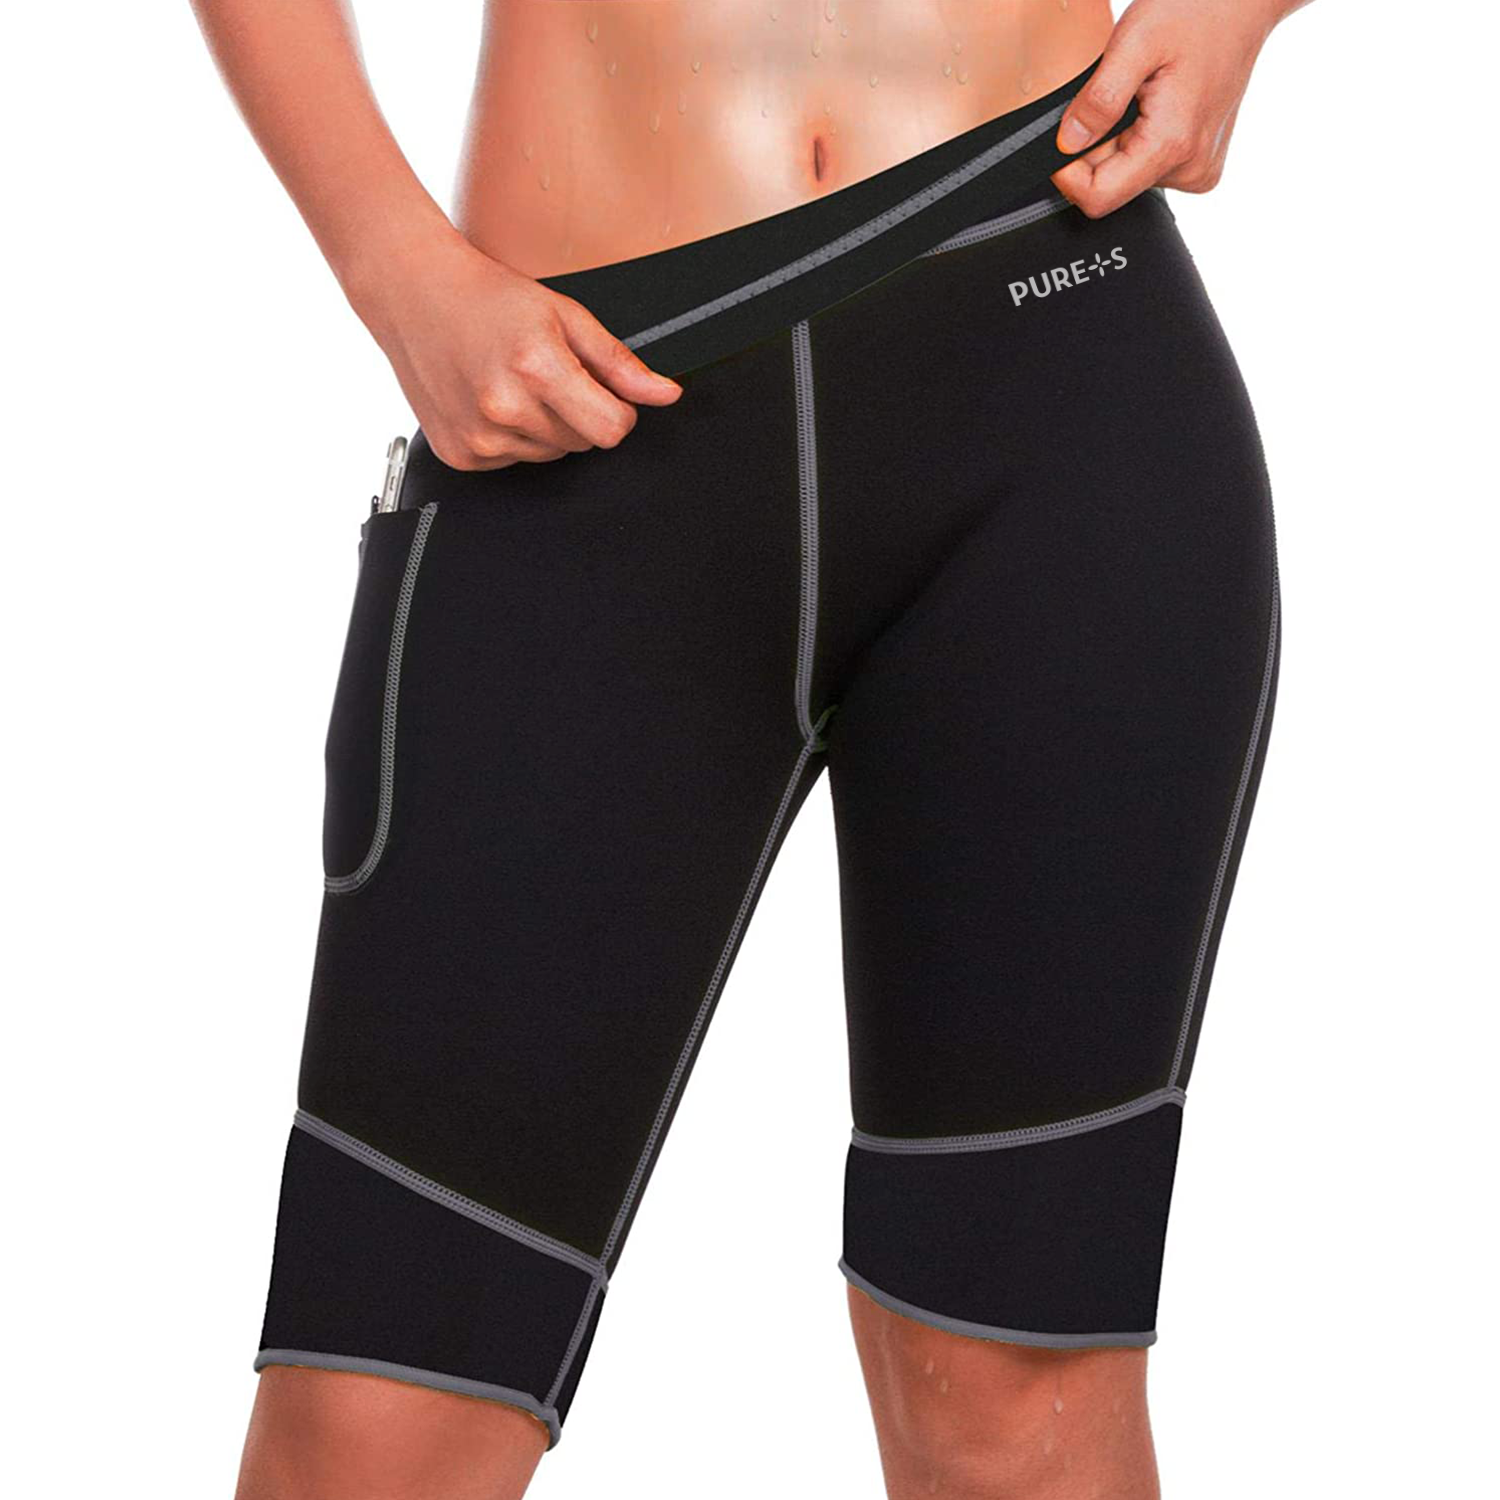 фото Неопреновые шорты для похудения, sauna leggings pure+s, размер m